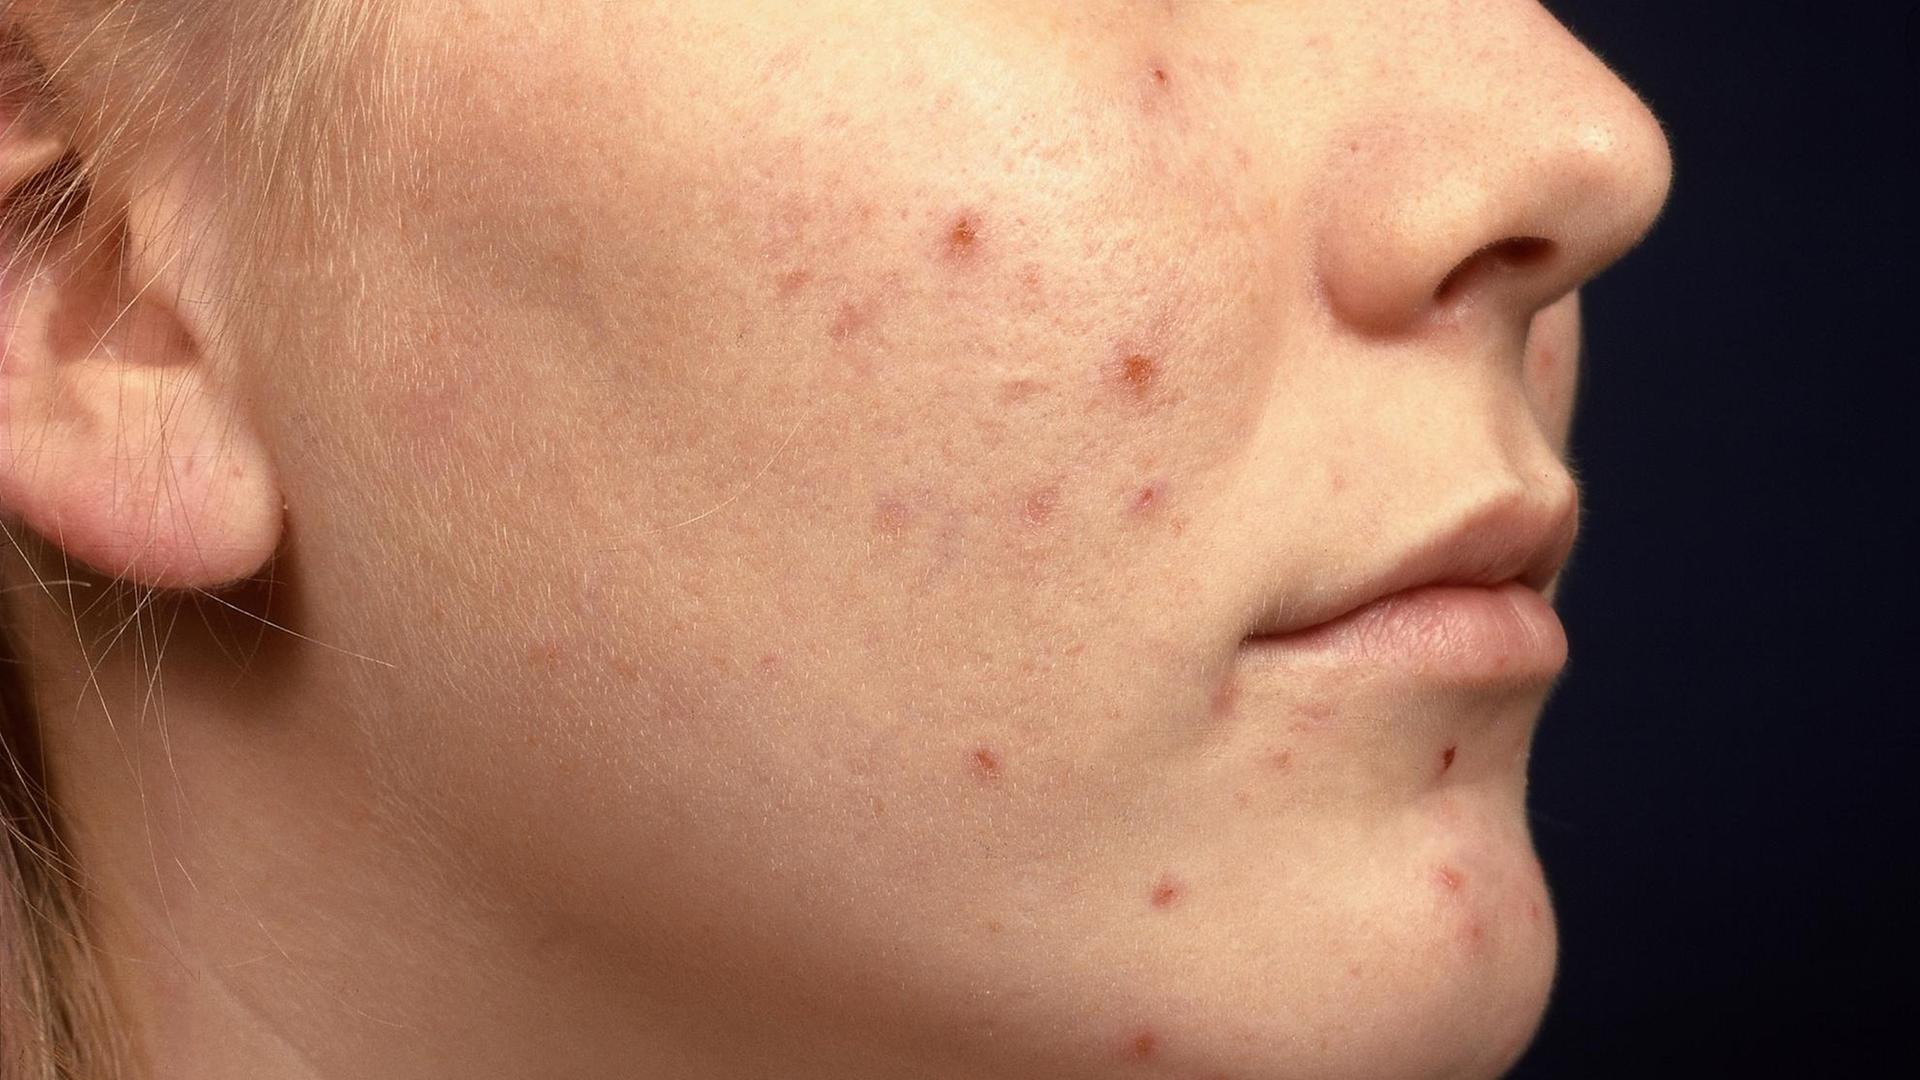 Medizin Dermatologie Akne Erosionen mit Krusten in Gesicht von Patientin Hauterkrankung medicine dermatology acne Acne excoriee des jeunes filles | Verwendung weltweit